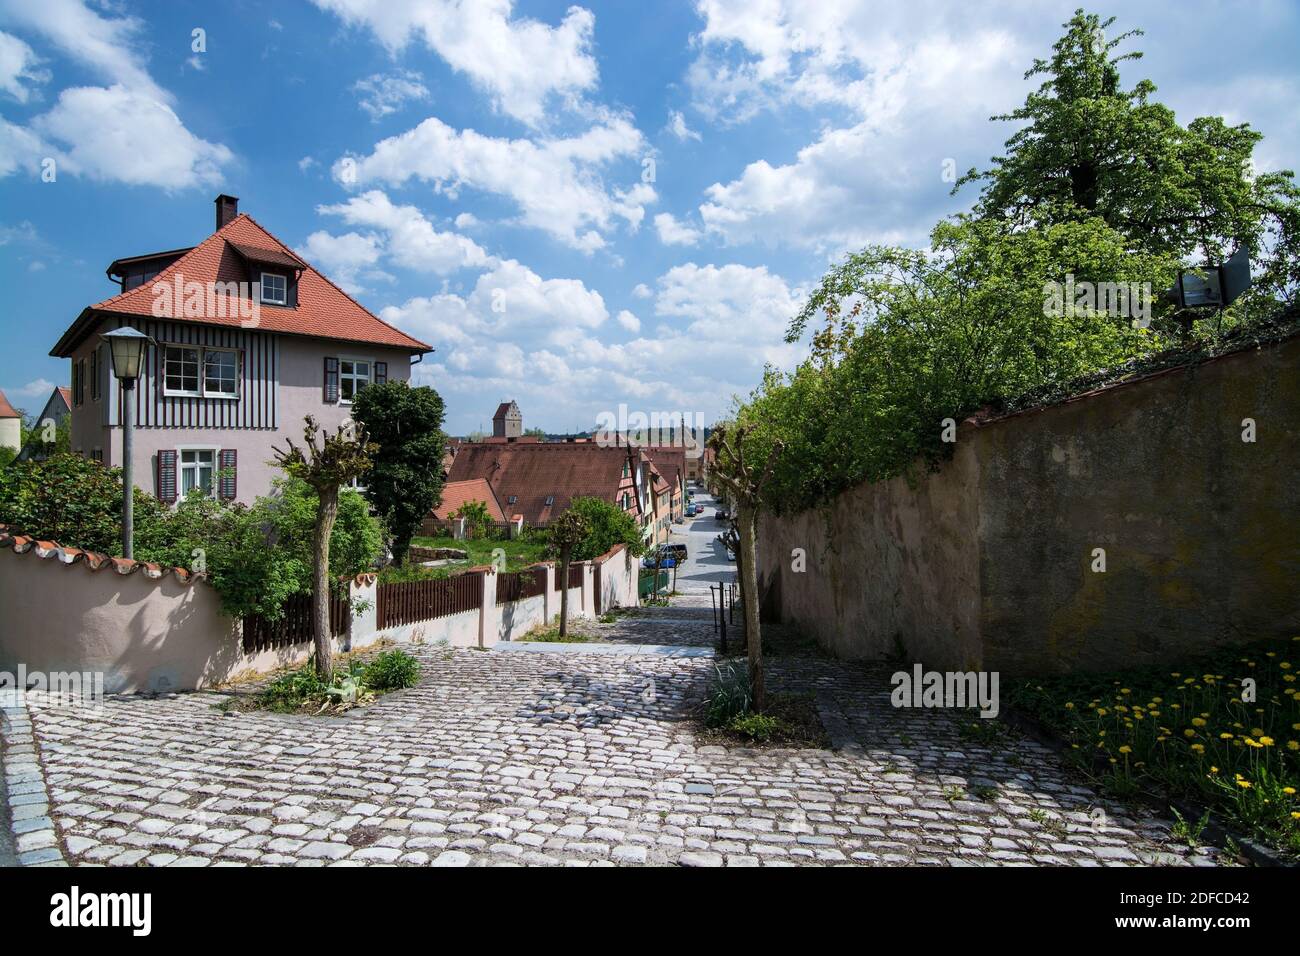 Dinkelsbühl ist eine Stadt im Landkreis Ansbach in Mittelfranken und aufgrund des besonders gut erhaltenen spätmittelalterlichen Stadtbildes ein bedeu Stock Photo